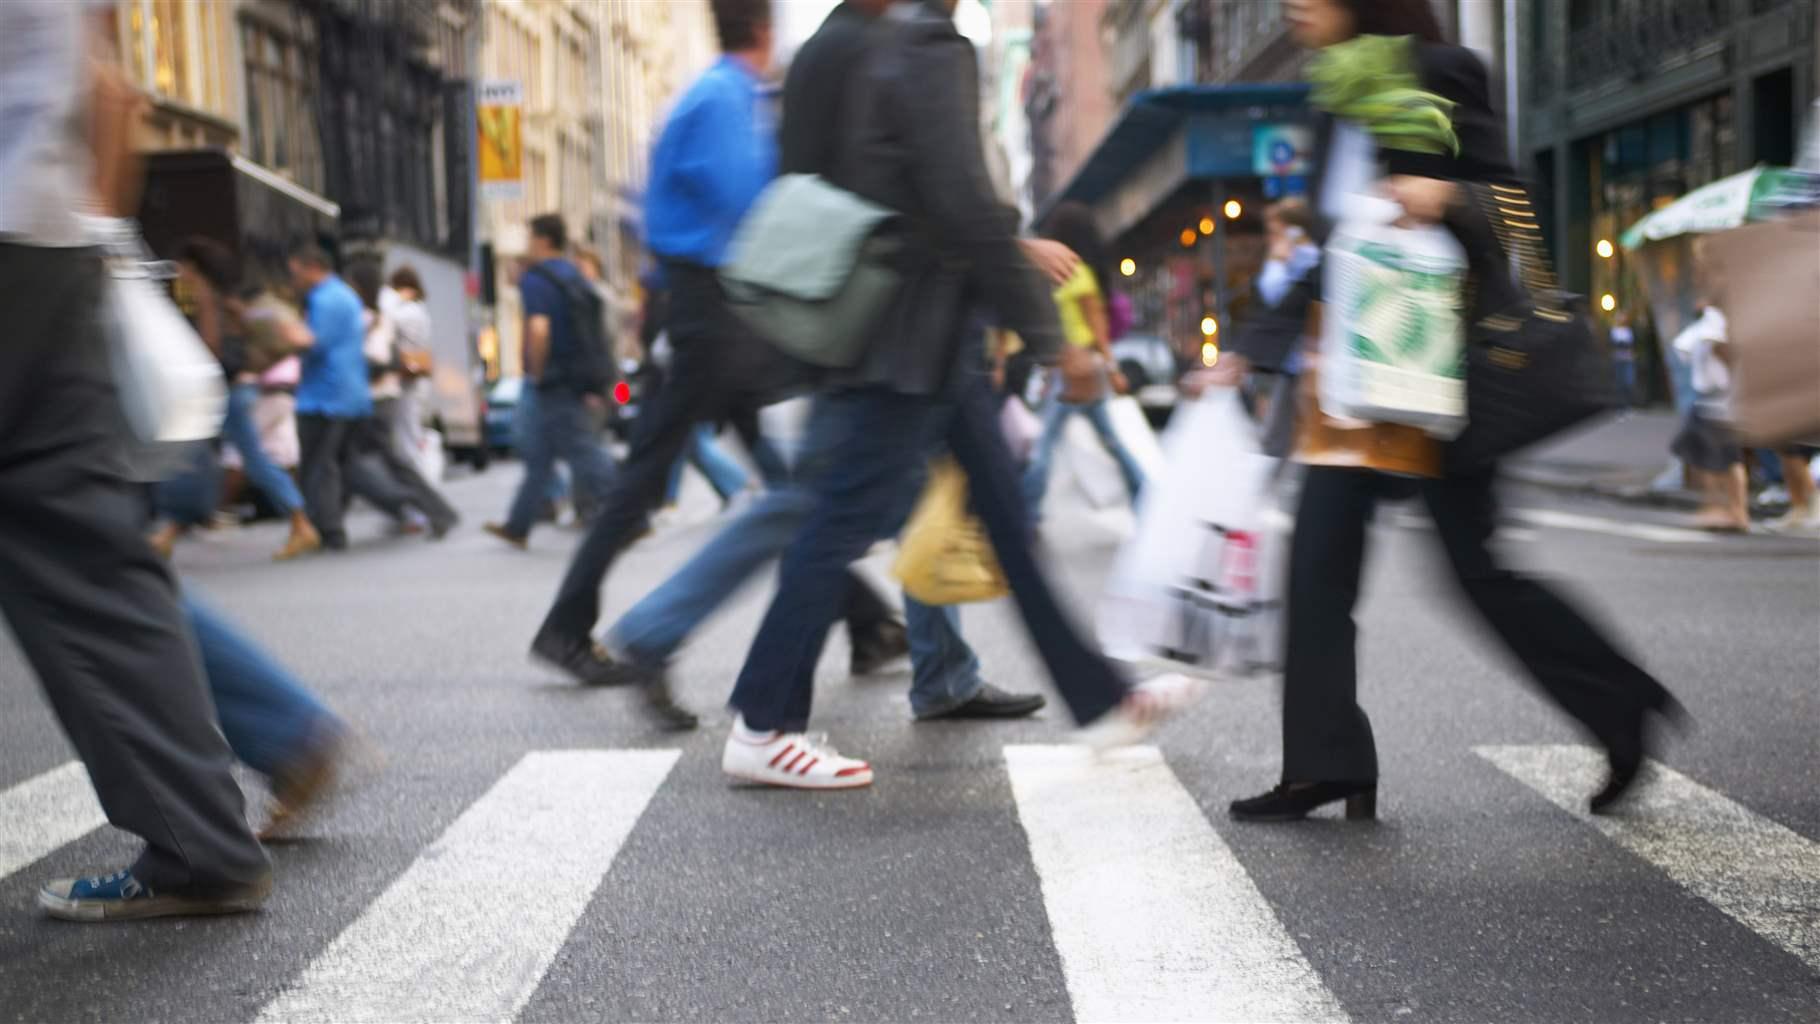 Pedestrians walking across a crosswalk on a busy New York City street.